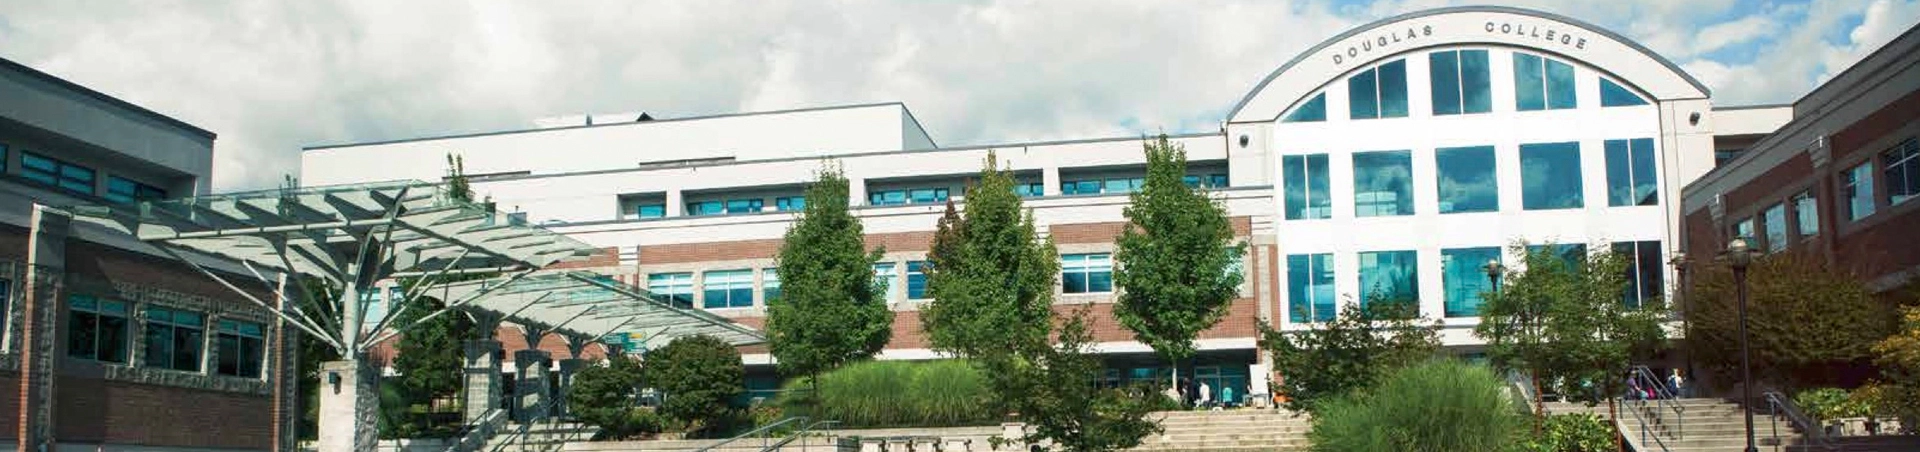 Douglas College Campus